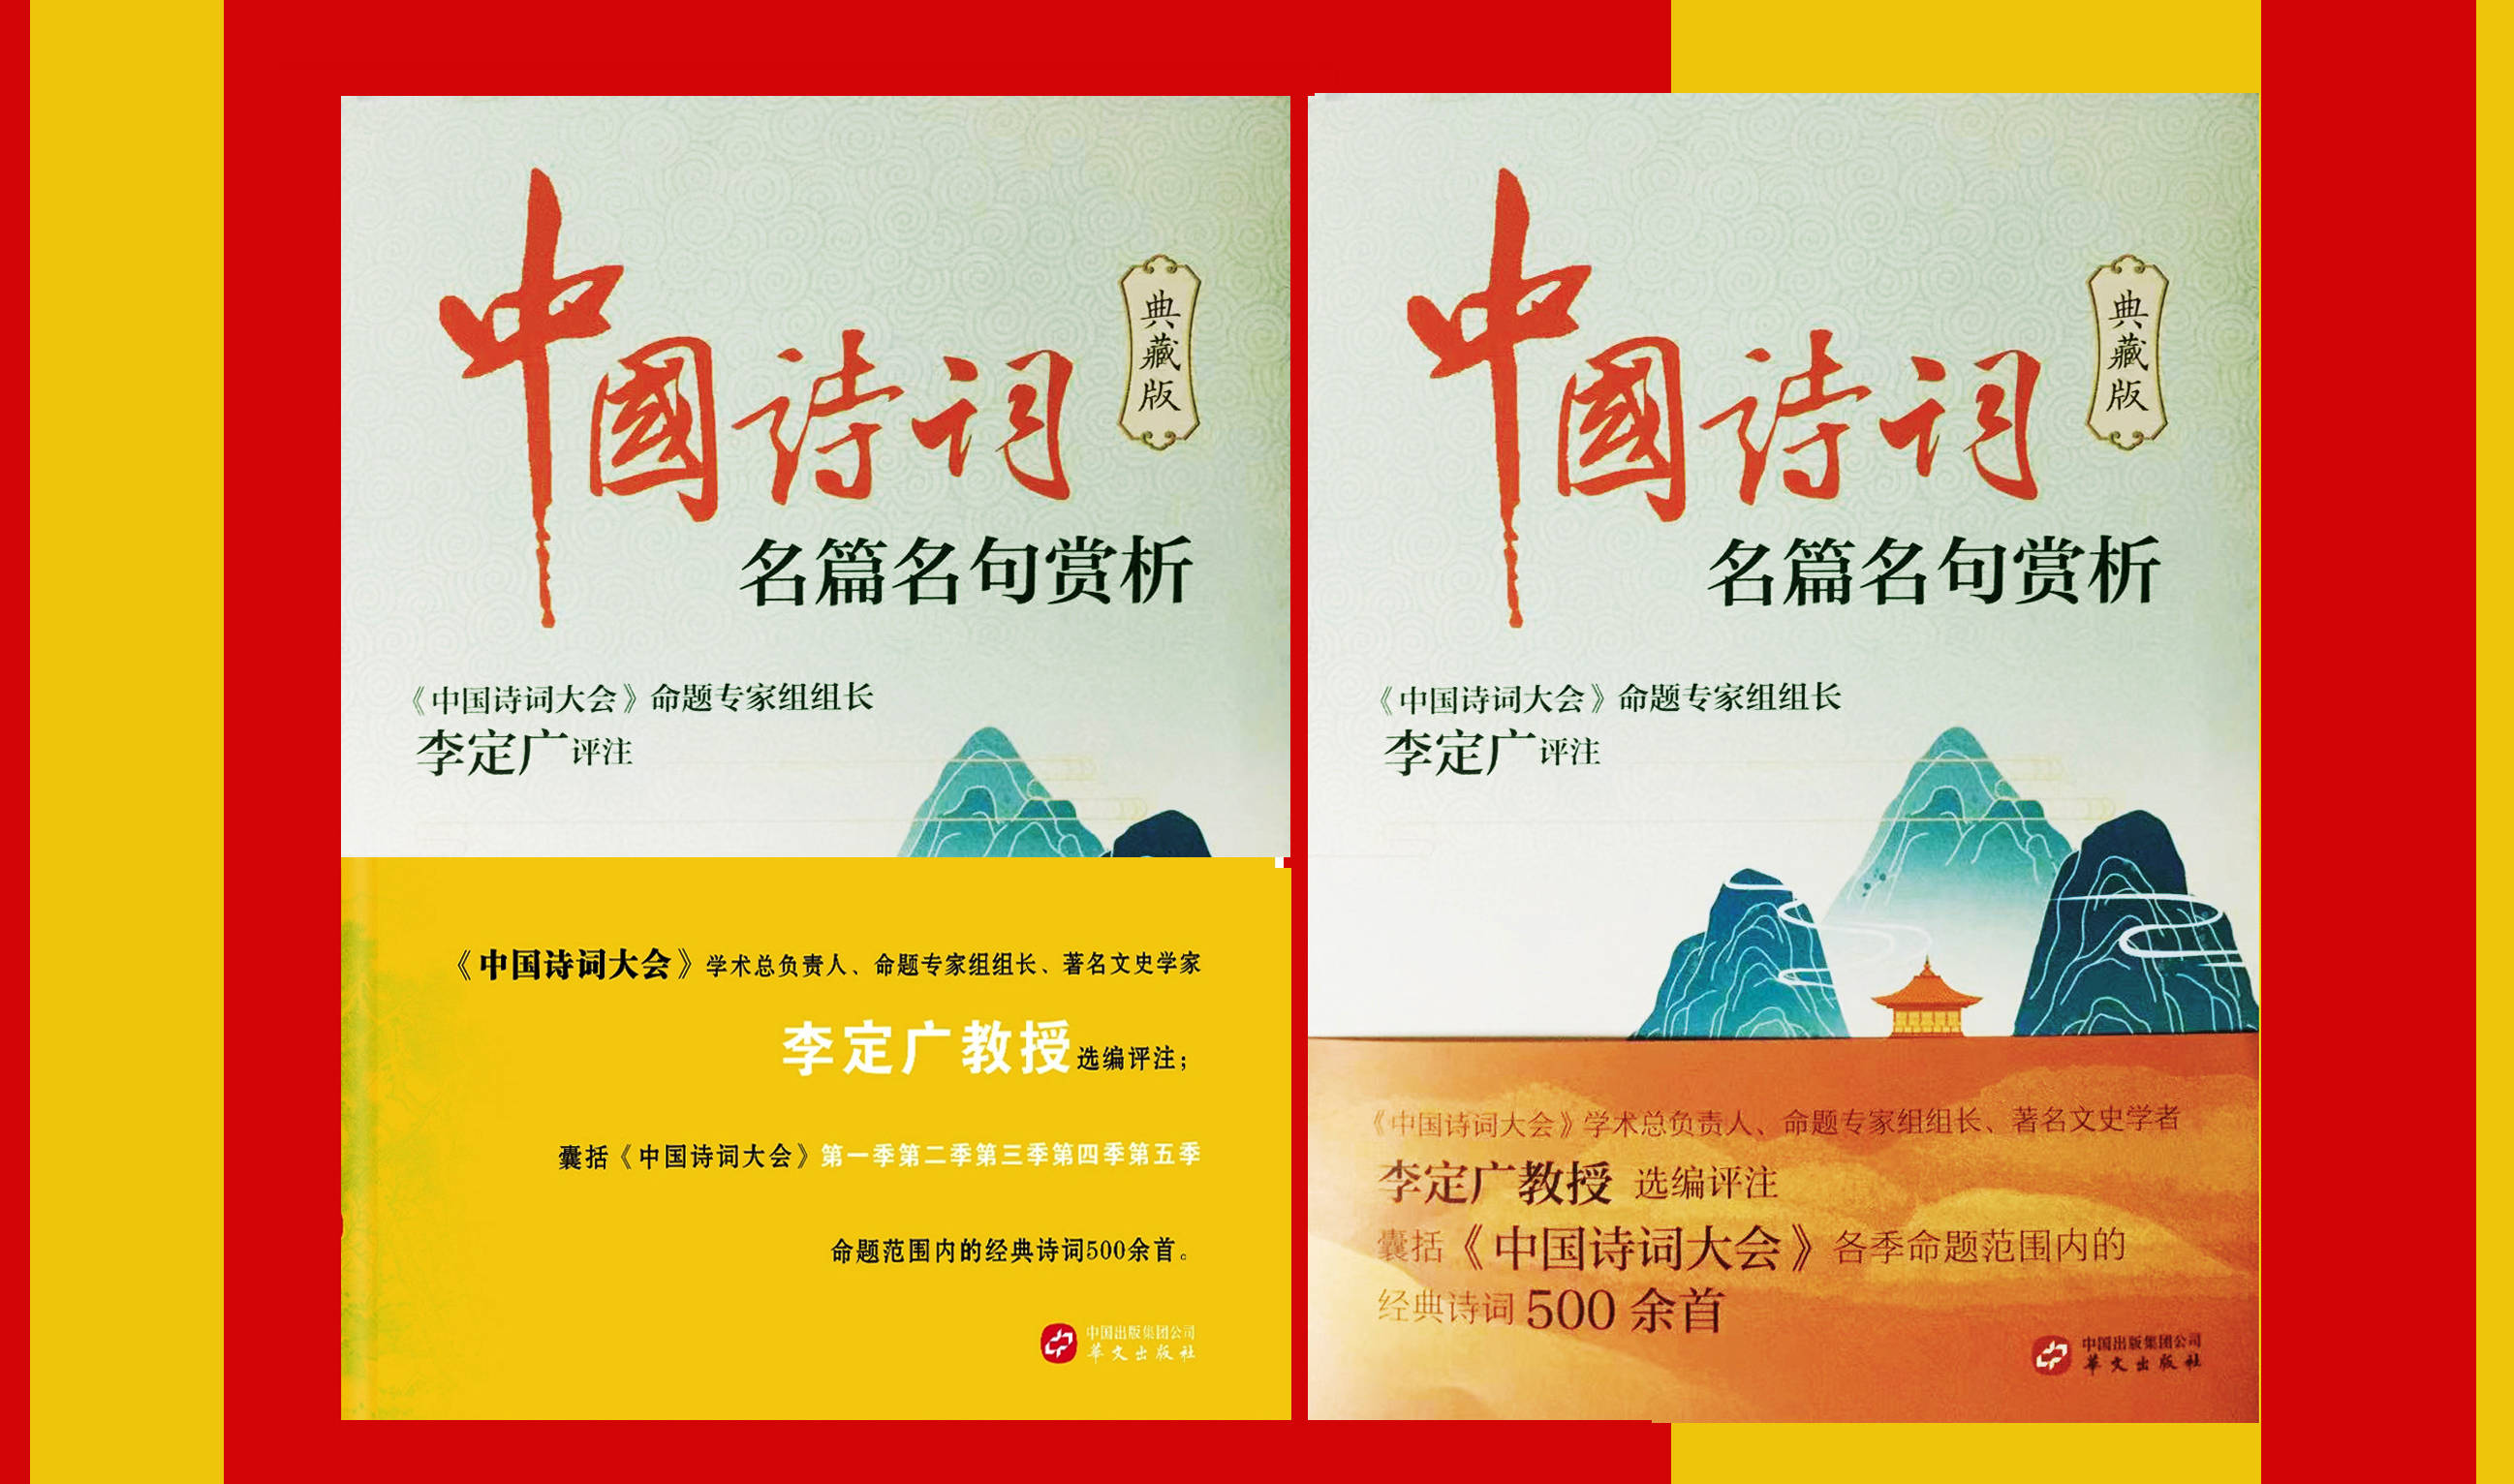 刘先银经典点说《中国诗词大会》李定广的《中国诗词名篇名句赏析》典藏